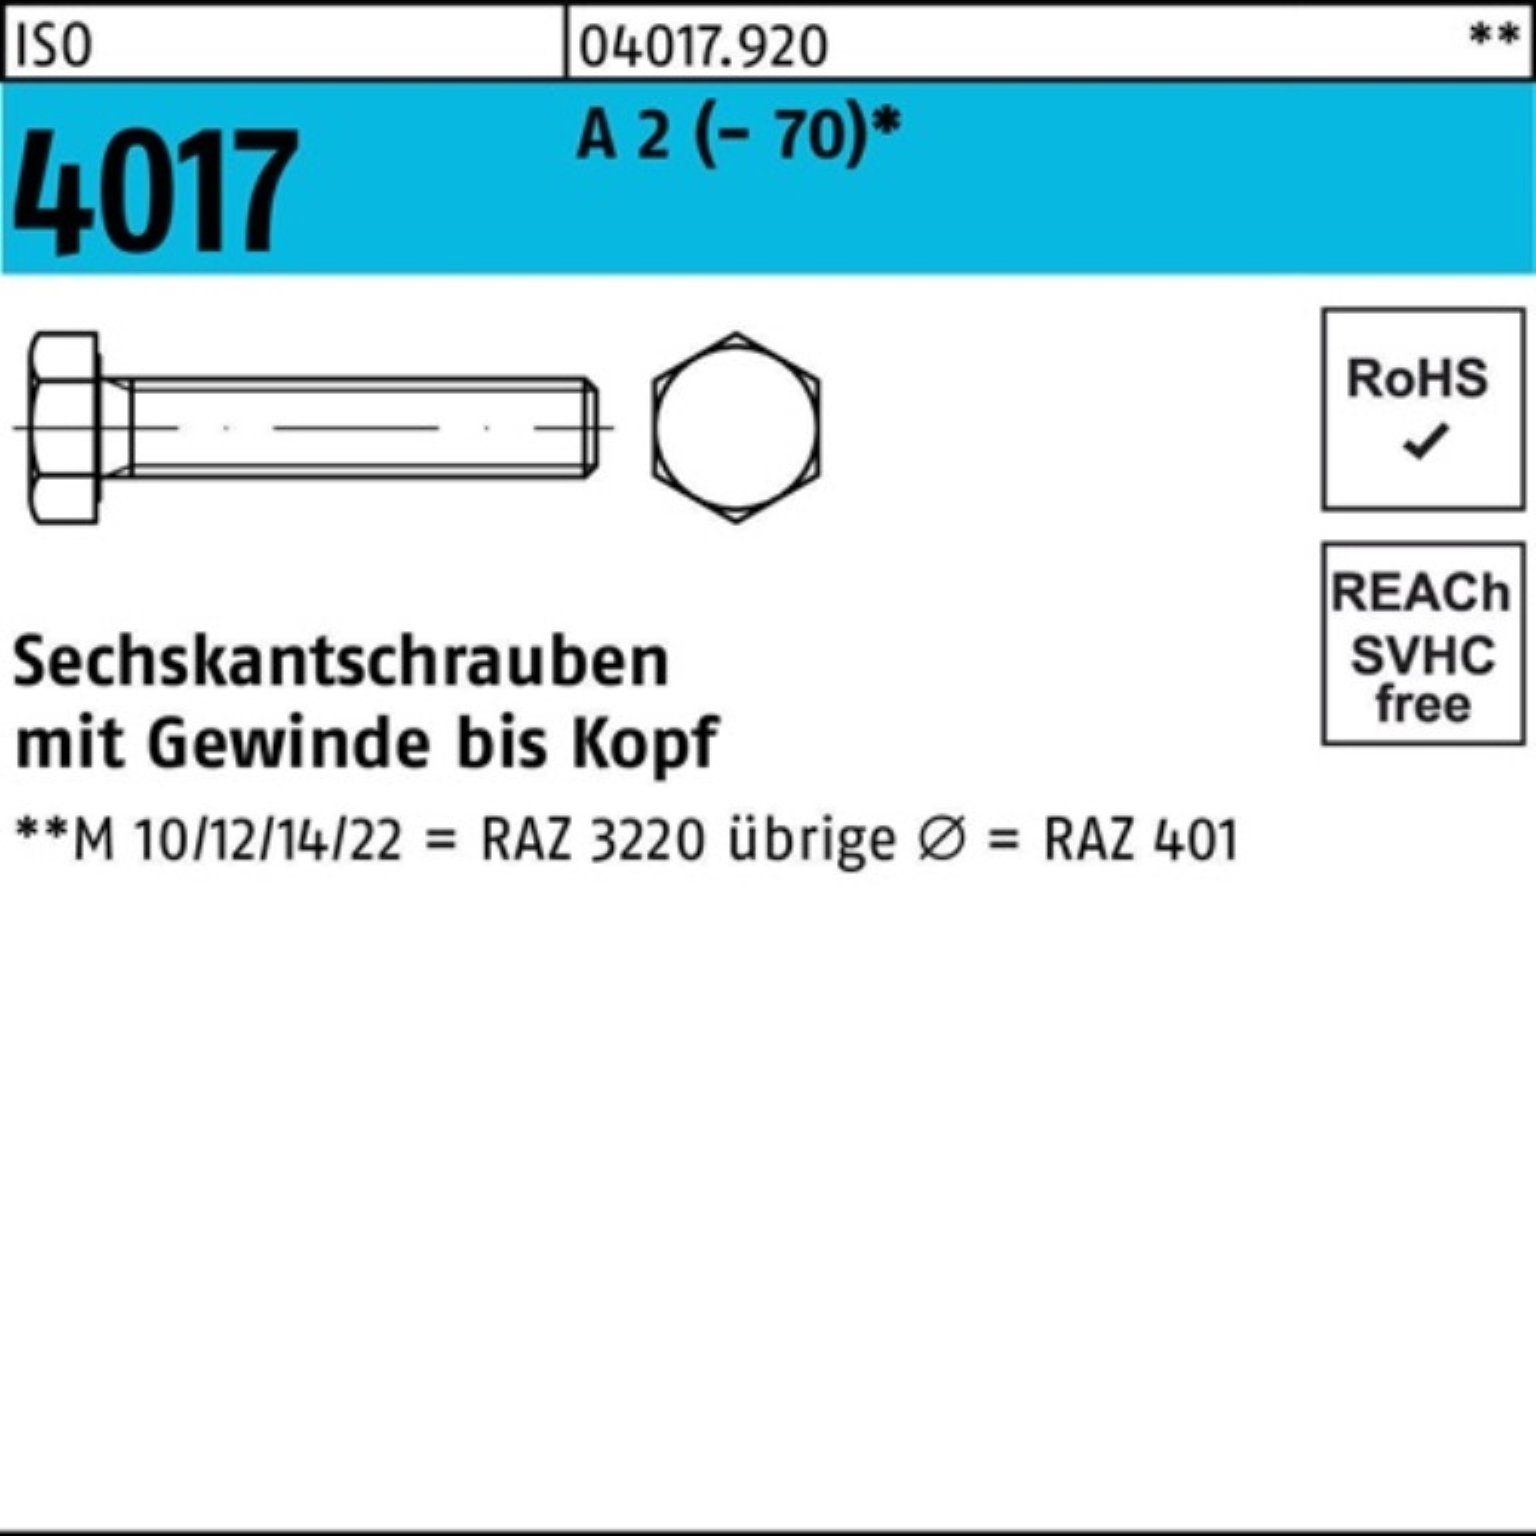 Bufab Sechskantschraube 100er Pack Sechskantschraube ISO 4017 VG M3x 8 A 2 (70) 100 Stück I